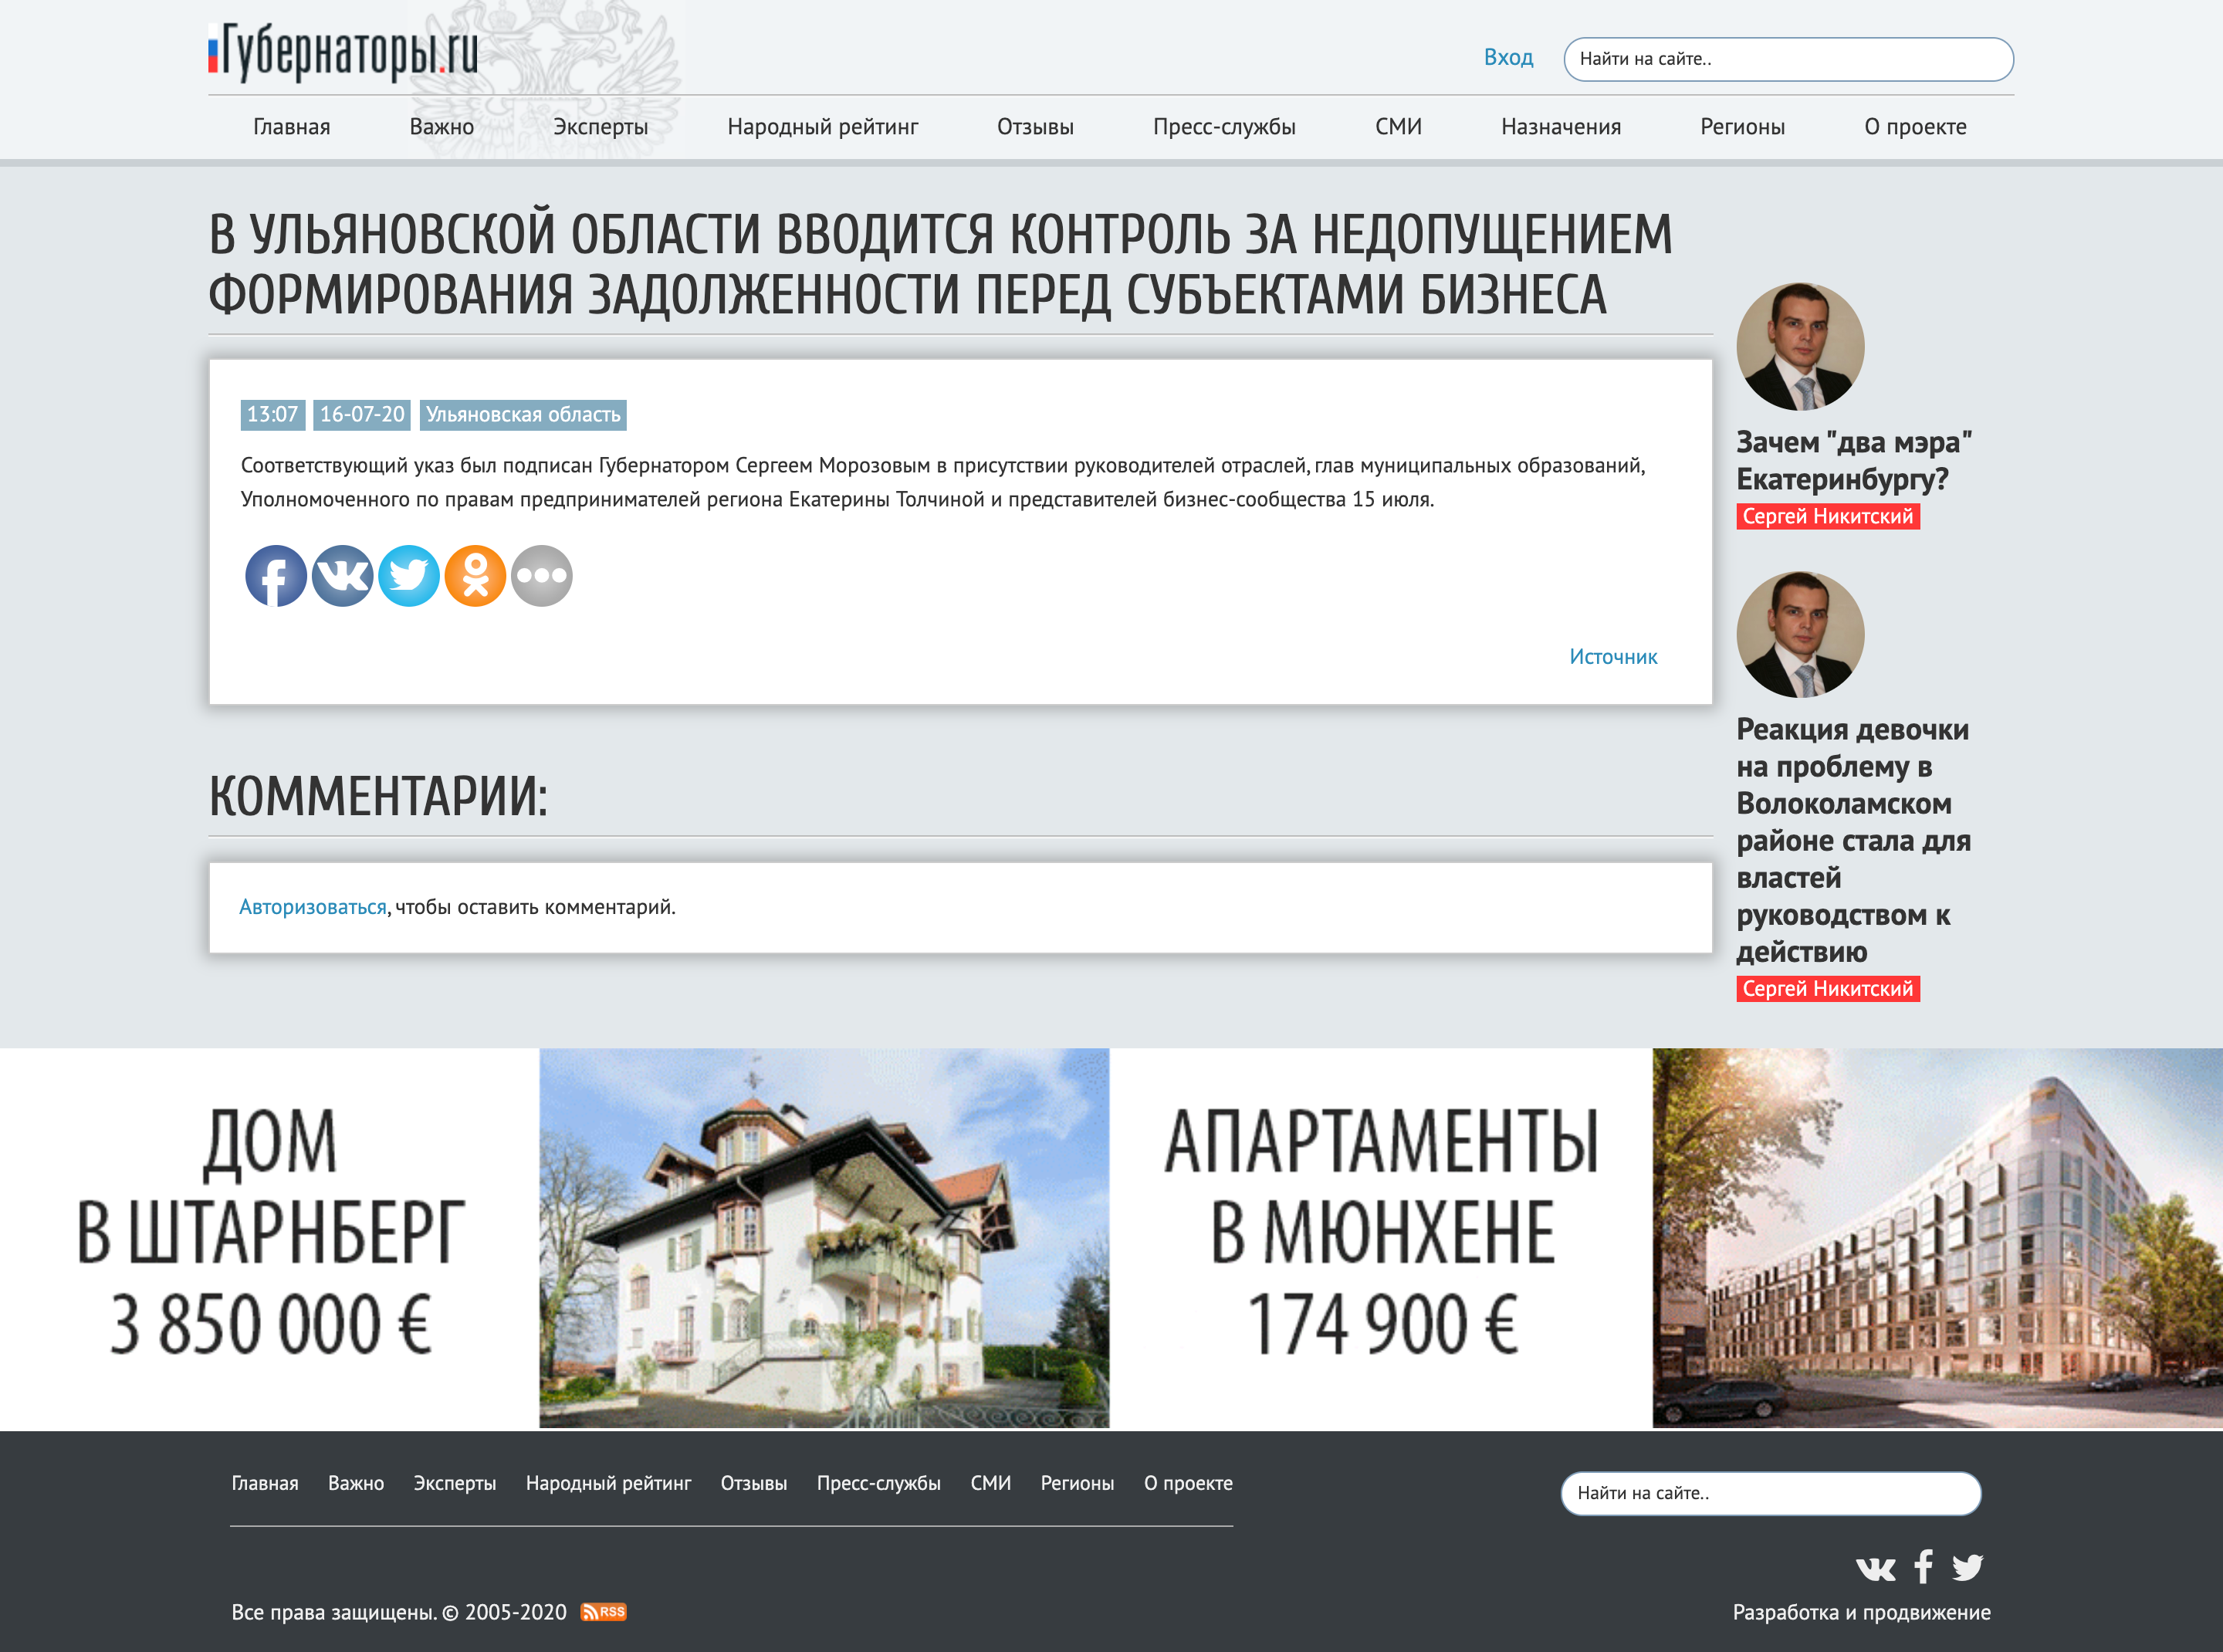 Https webstat rosstat gov ru. Уполномоченный по правам предпринимателей в Самарской области.